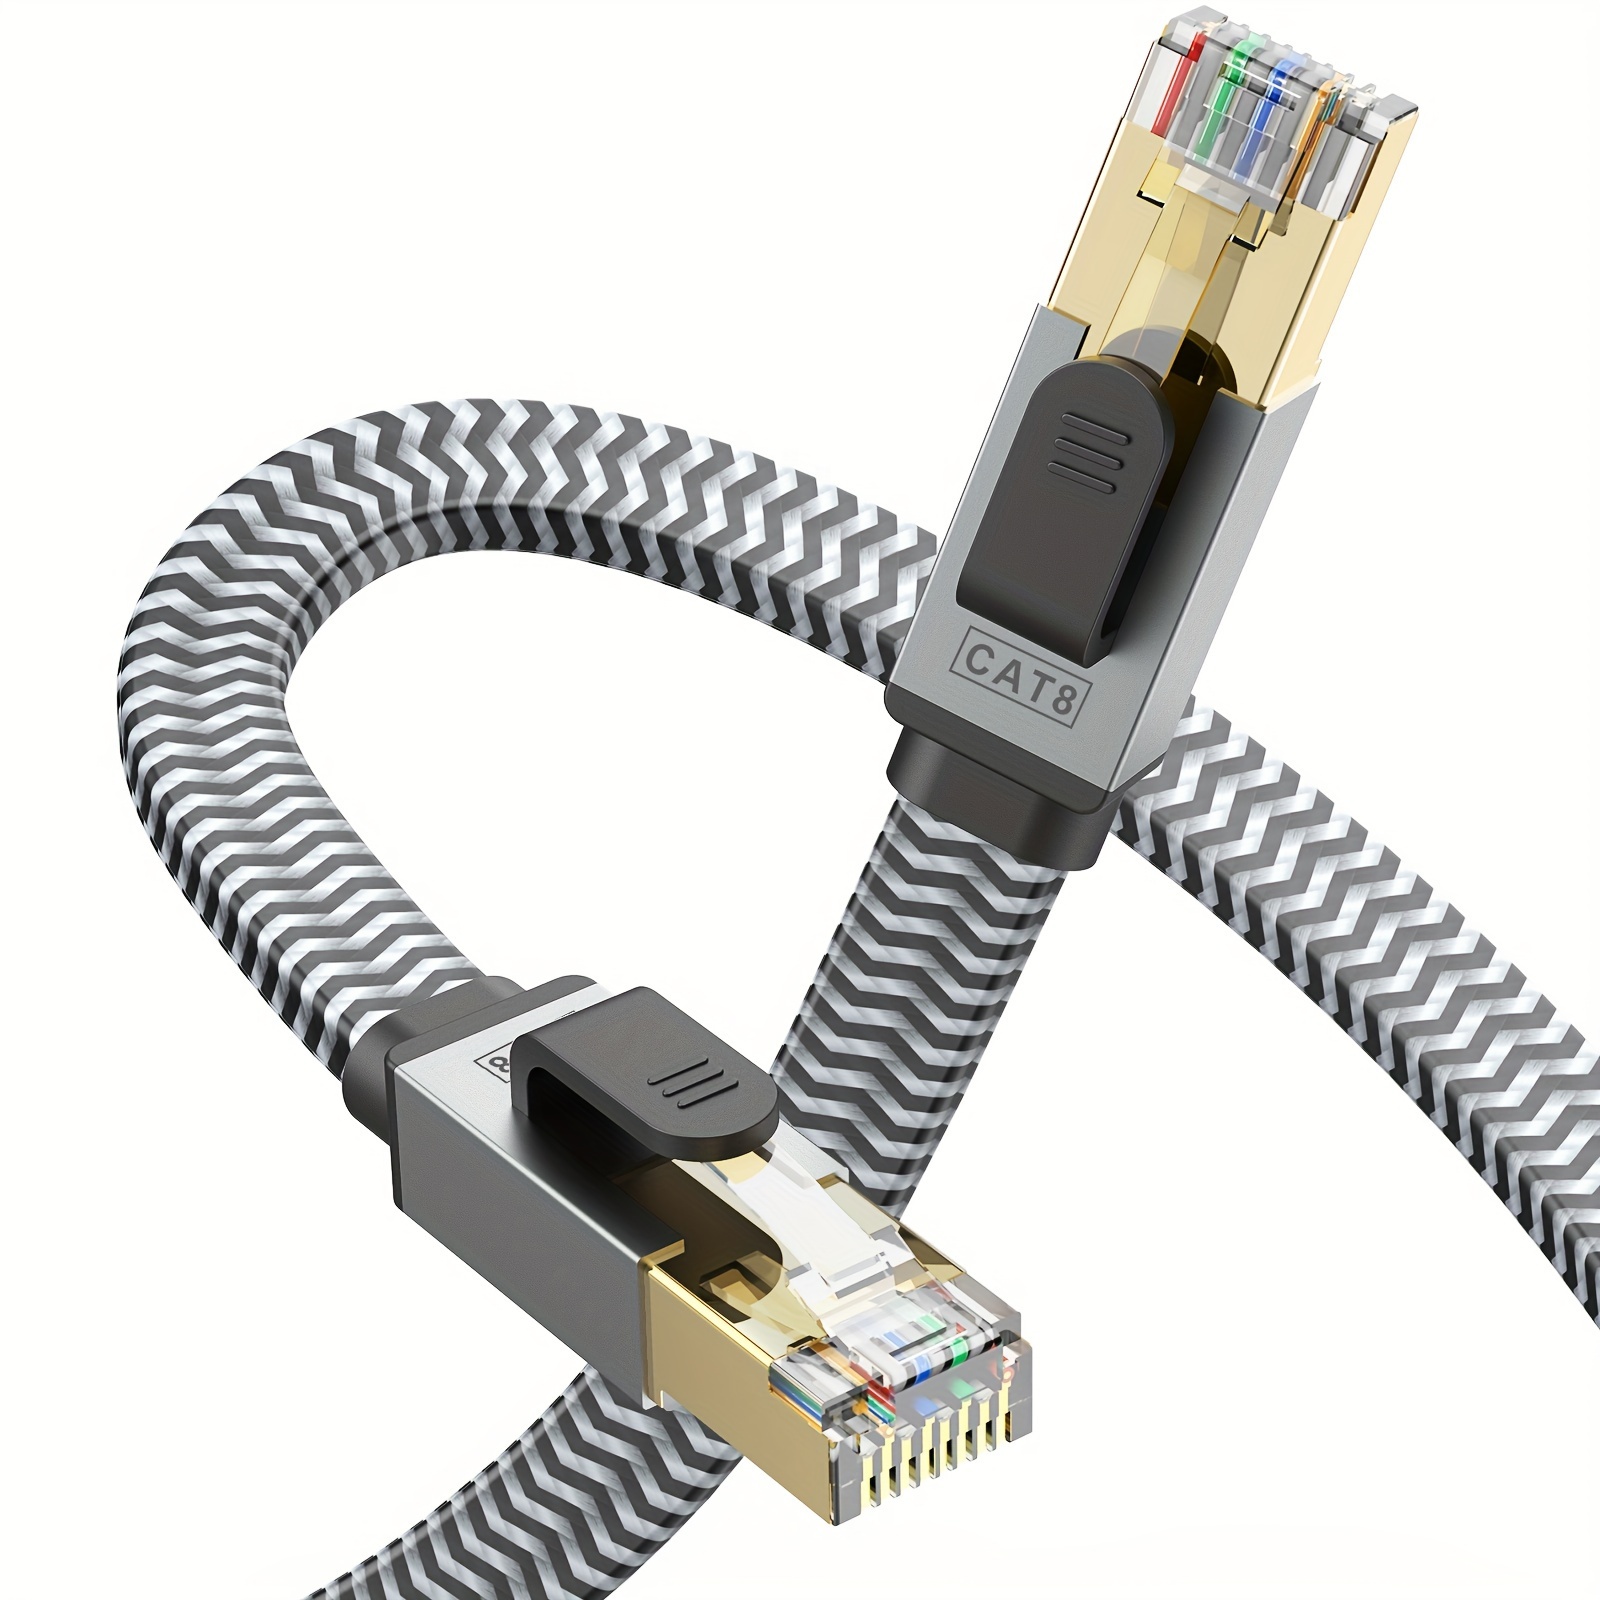 Cable Ethernet Cat 8, cable de red Cat8 de alta Ecuador